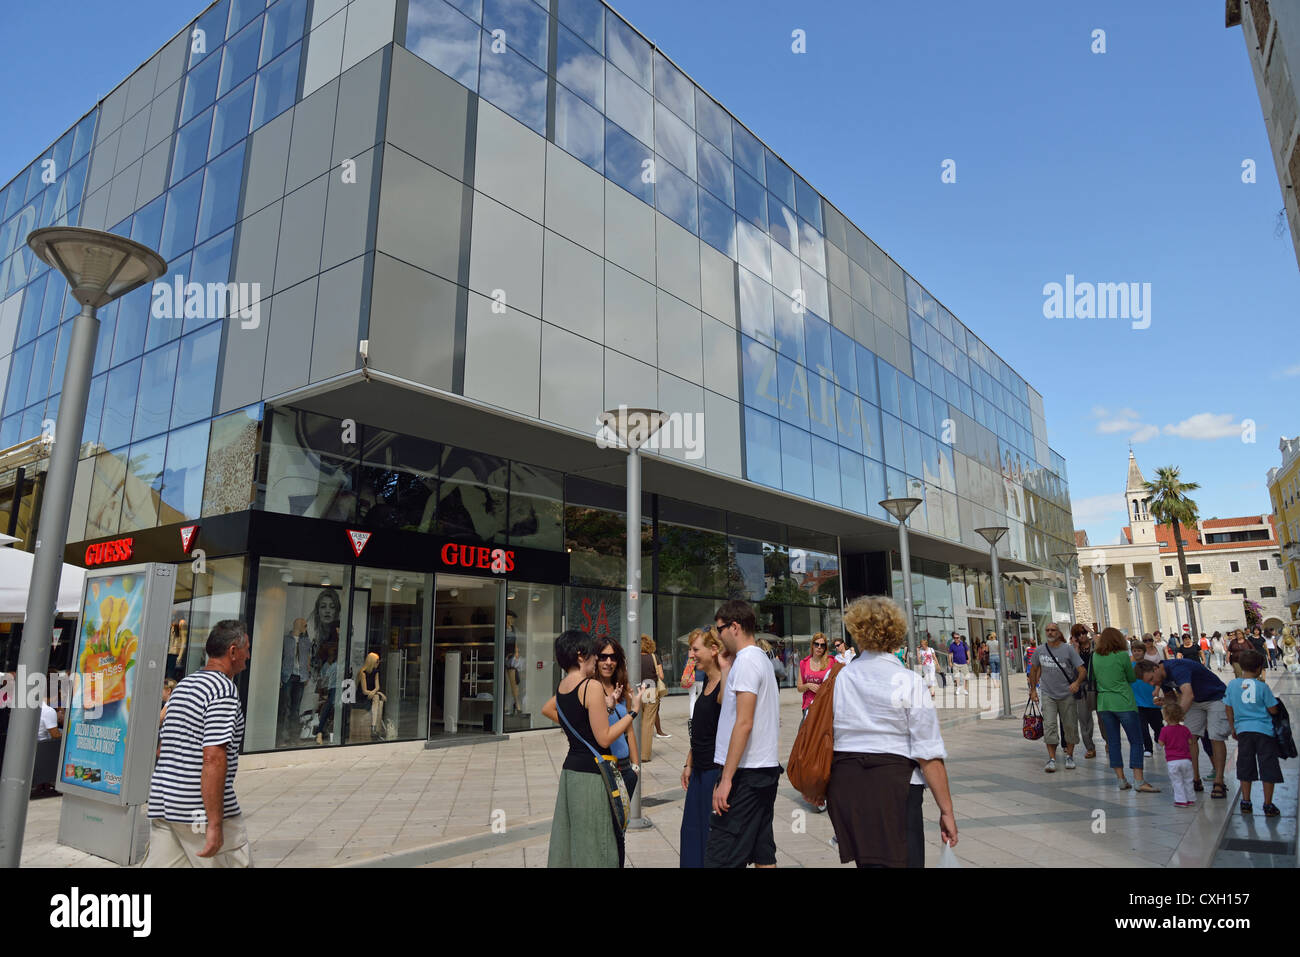 Zara and Guess stores, Marmontova, Old Town, Split, Split-Dalmatia Stock  Photo - Alamy